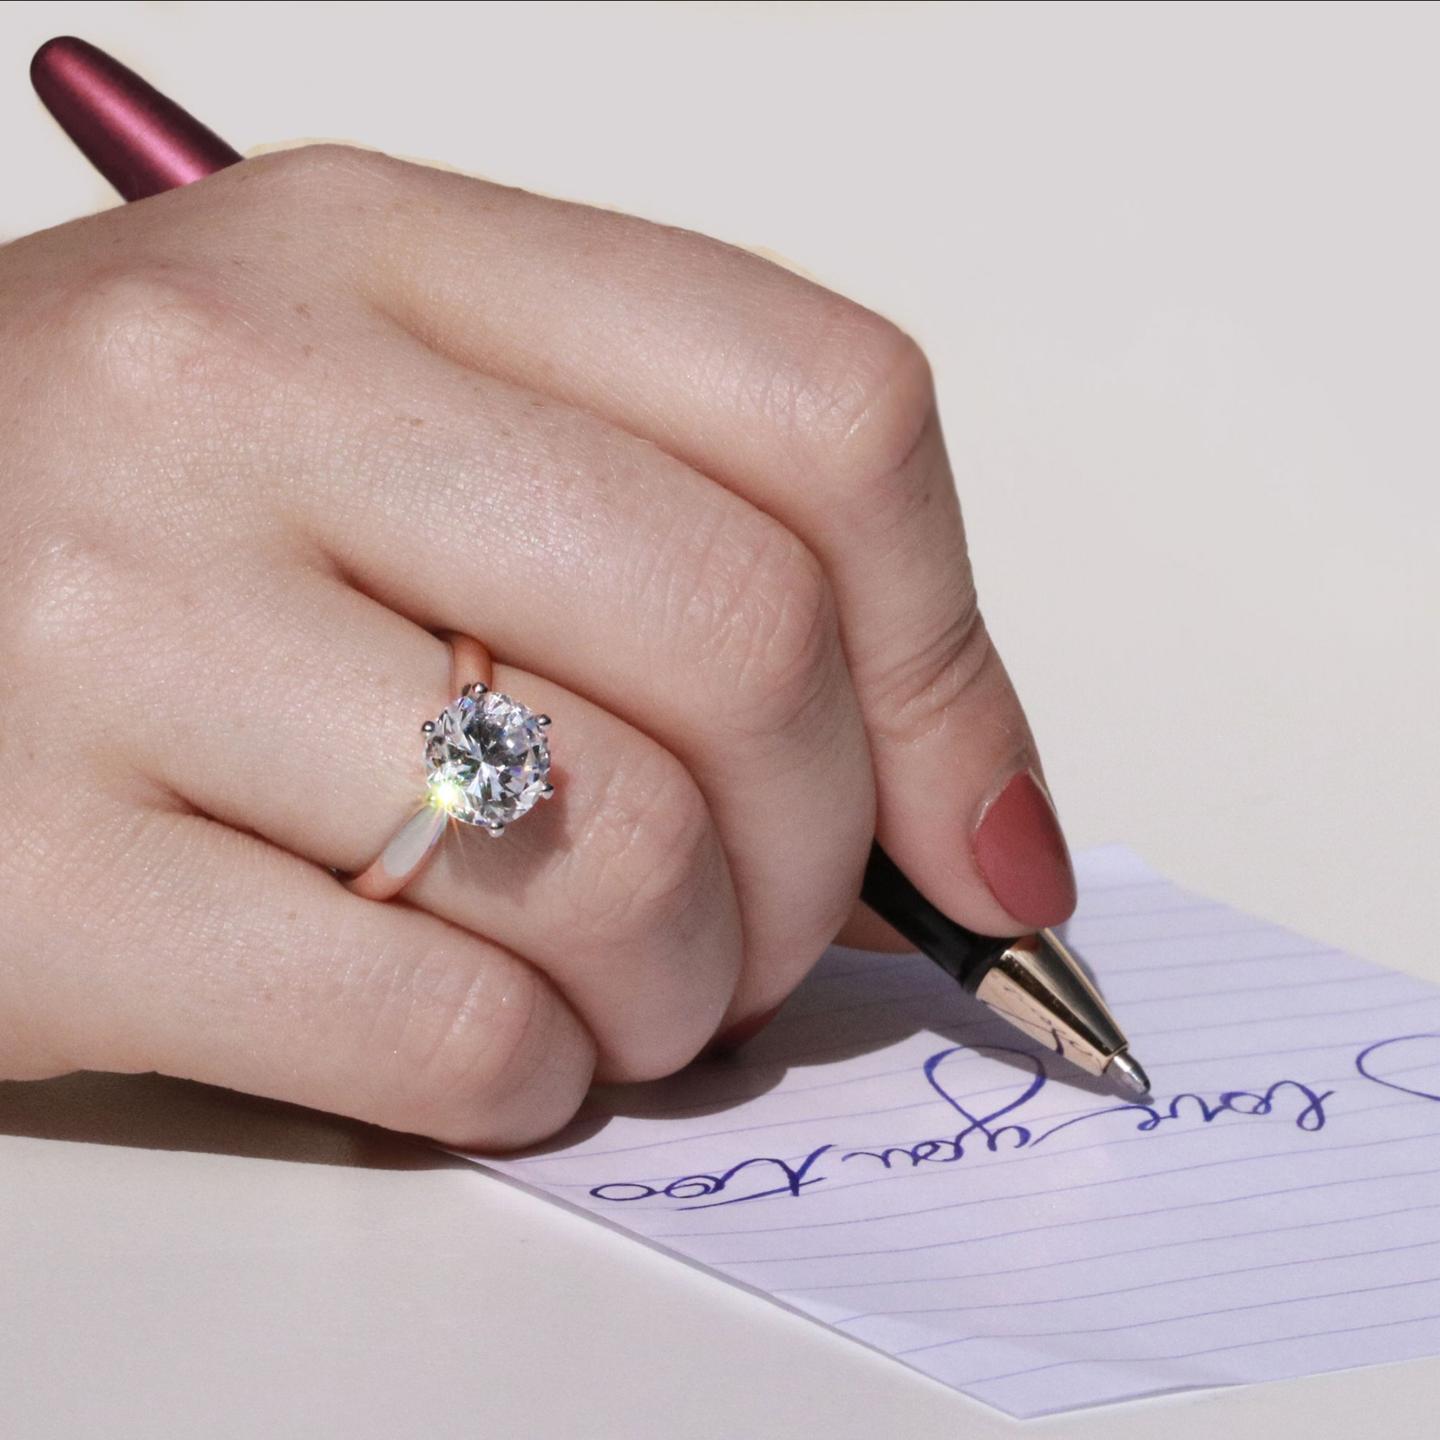 我為什麼應該選擇老式歐洲切割的鑽石訂婚戒指? 